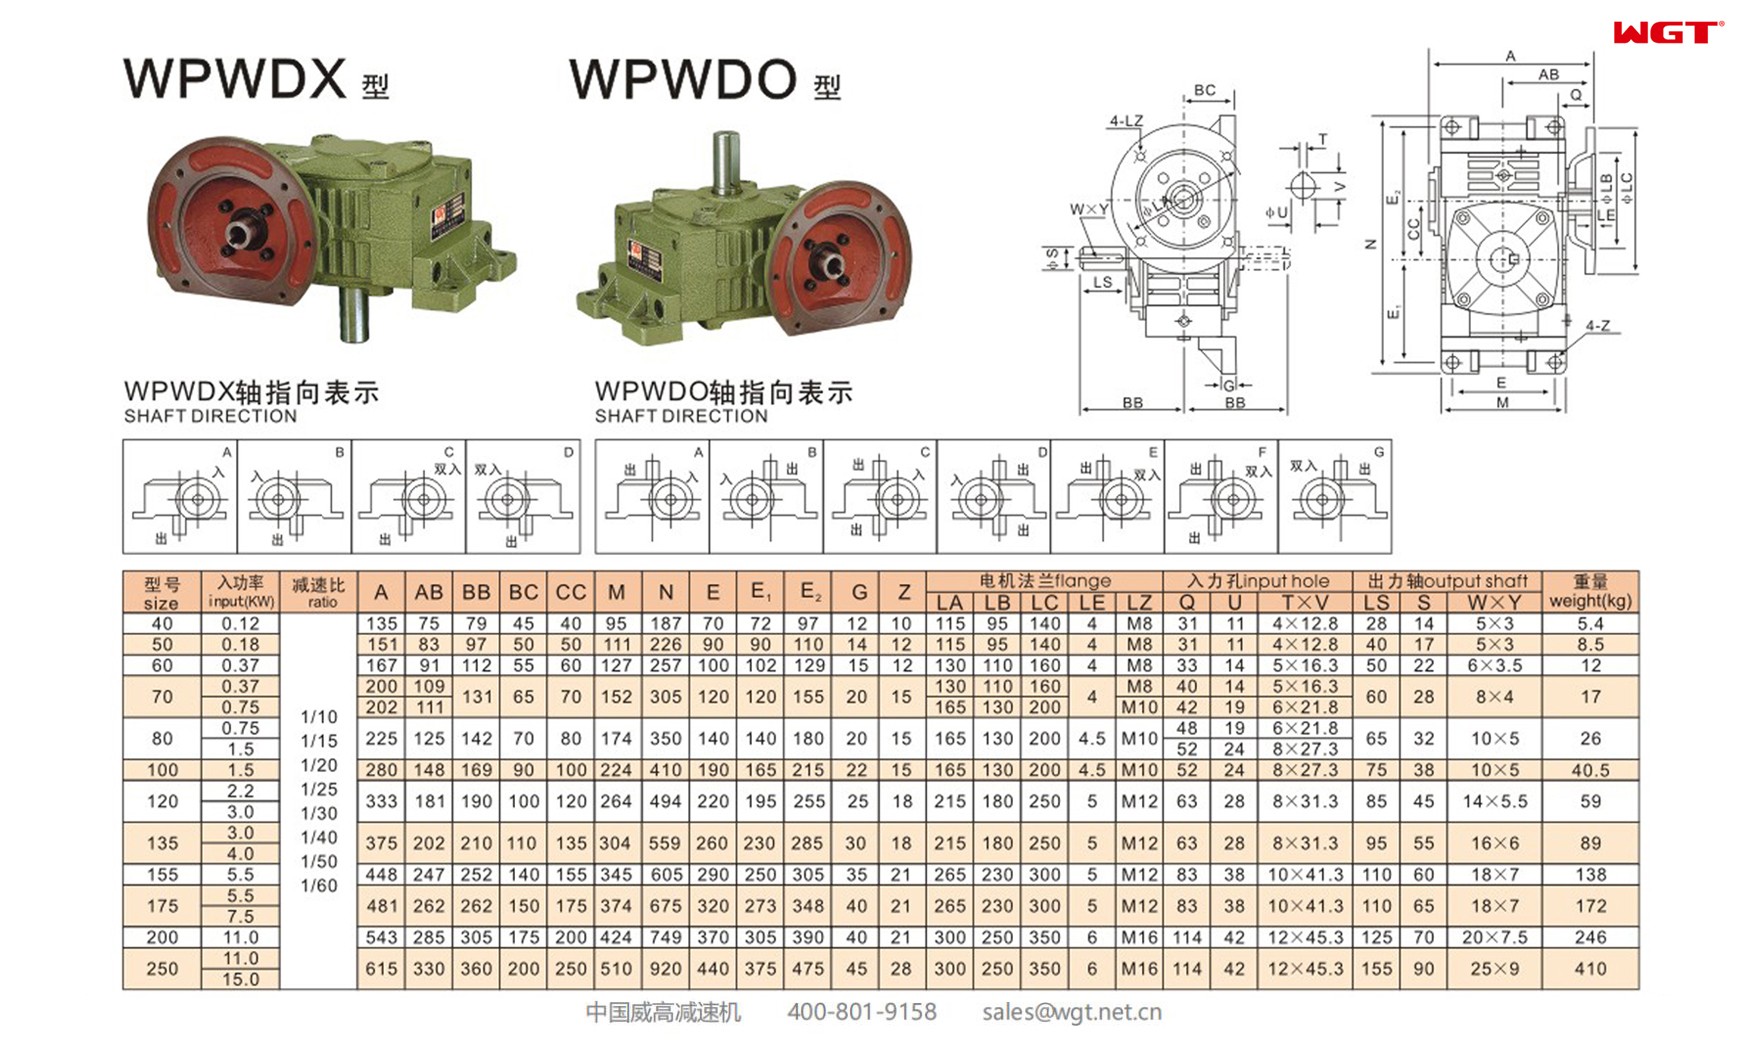 WPWDO40 worm gear reducer universal speed reducer